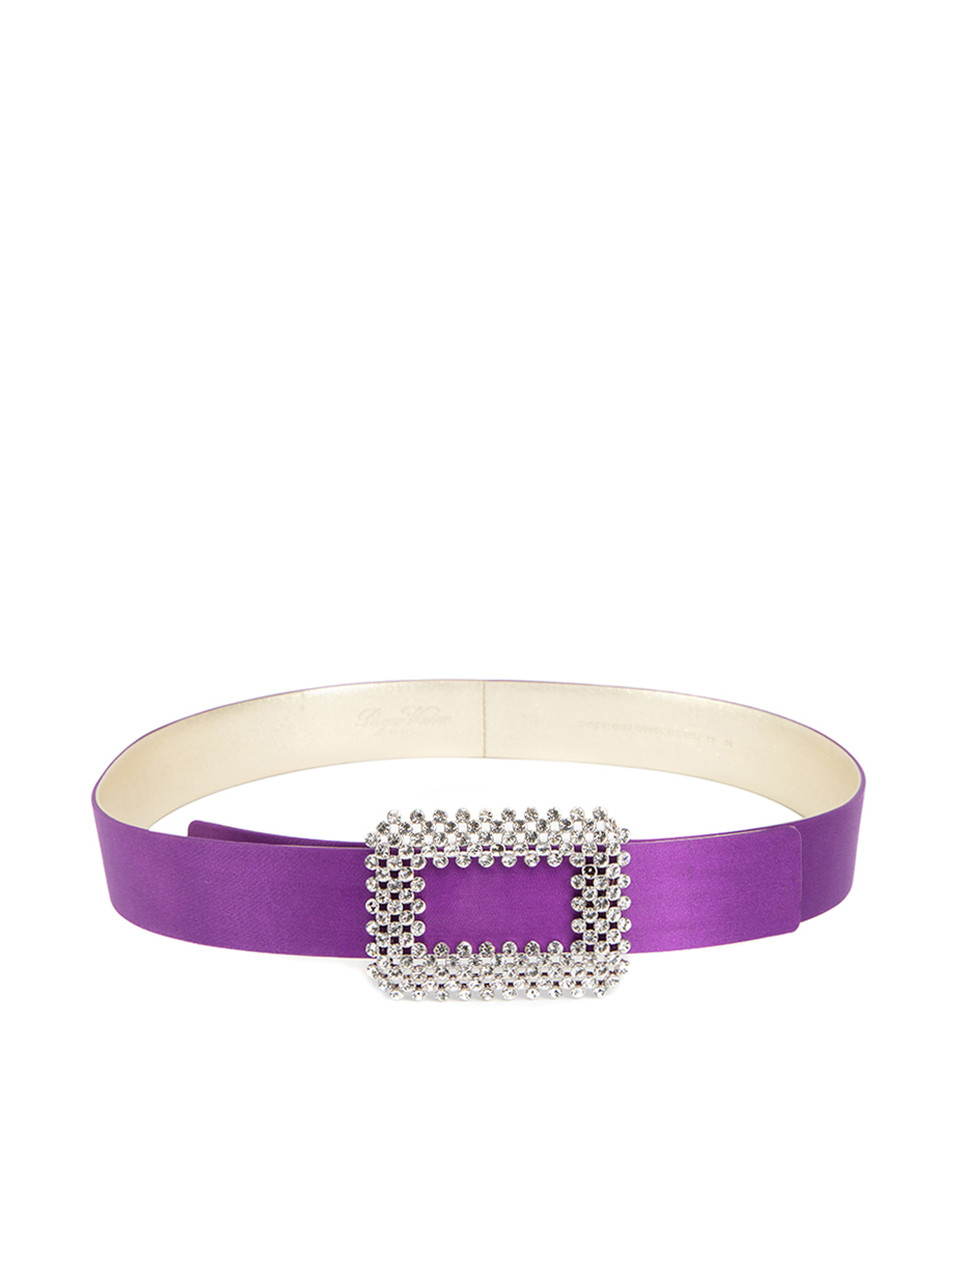 Roger Vivier Purple Satin Leather Diamanté Buckled Belt